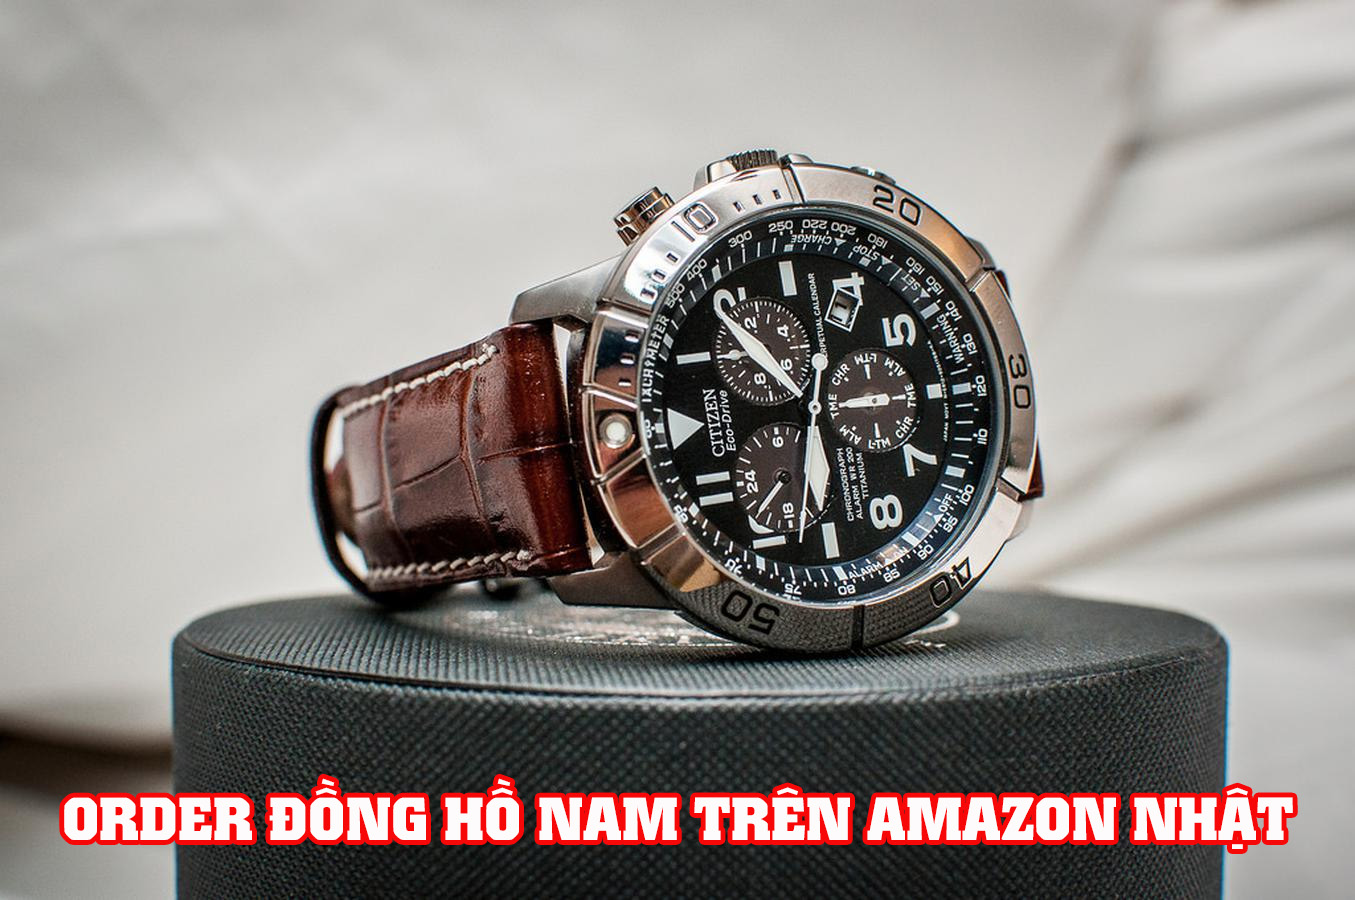 Cách order đồng hồ nam trên Amazon Nhật giá tốt - Đặt hàng amazon nhật bản